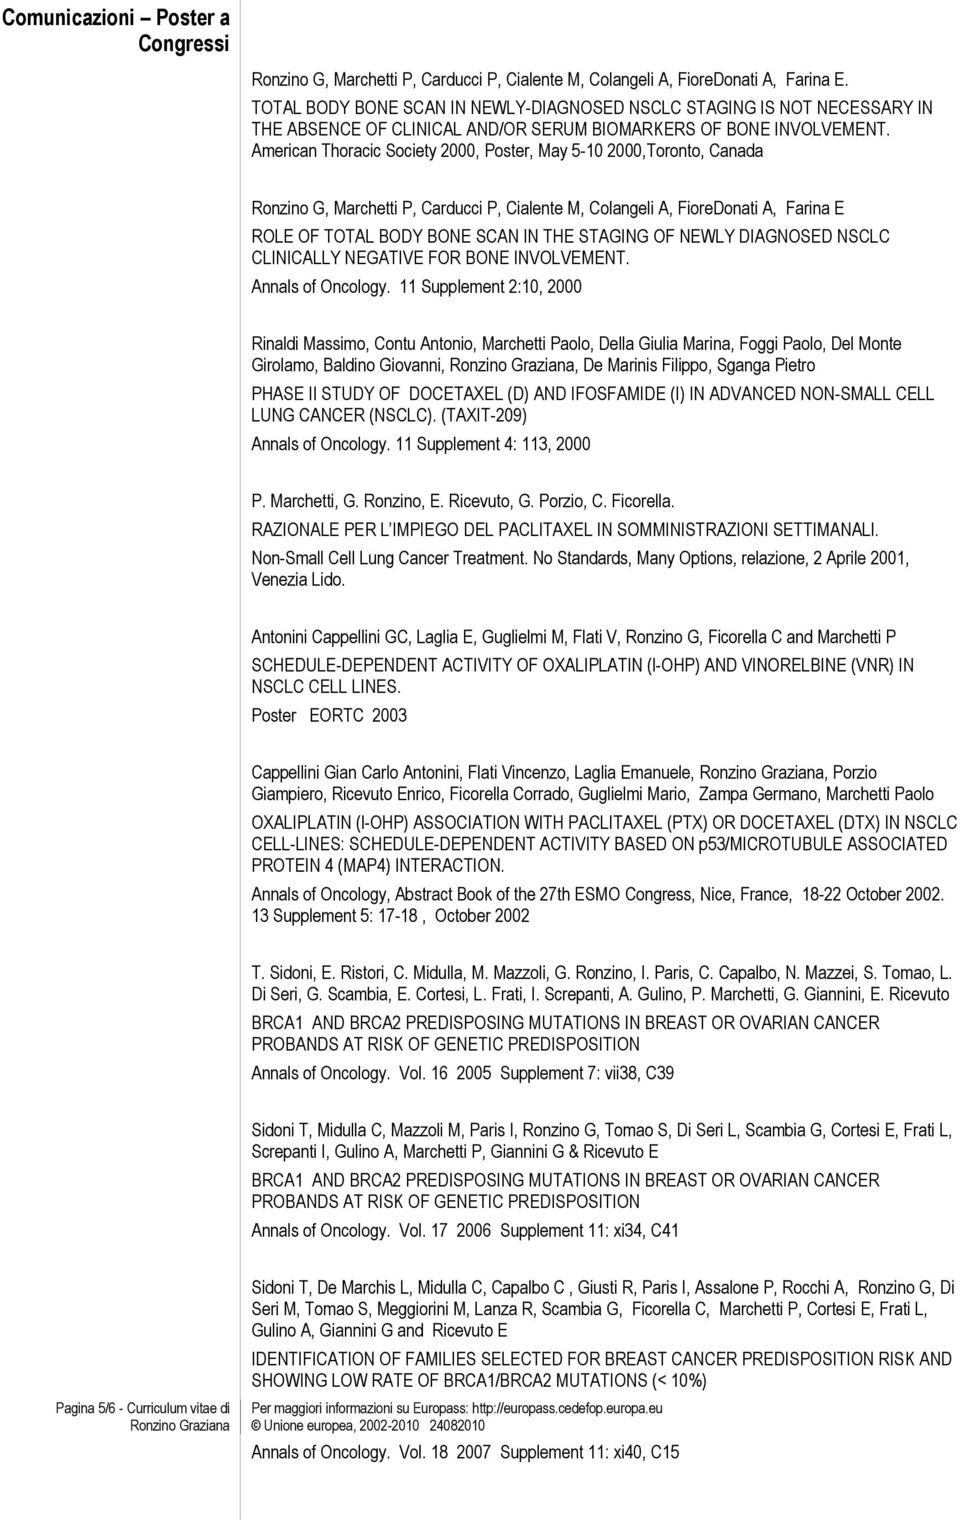 American Thoracic Society 2000, Poster, May 5-10 2000,Toronto, Canada Ronzino G, Marchetti P, Carducci P, Cialente M, Colangeli A, FioreDonati A, Farina E ROLE OF TOTAL BODY BONE SCAN IN THE STAGING